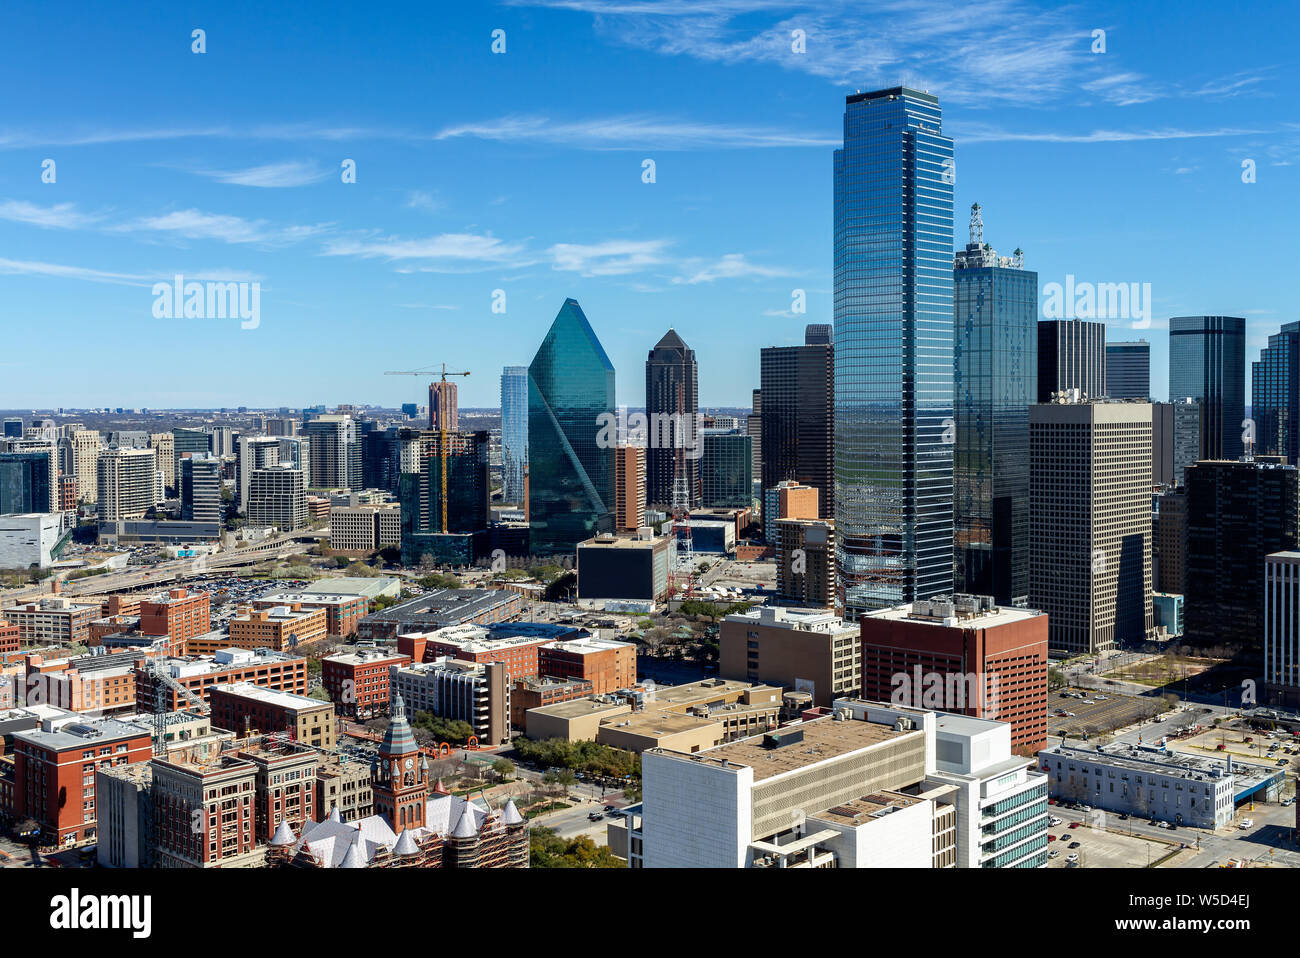 Vista del paisaje urbano del centro de Dallas, Texas, EE.UU. Foto de stock